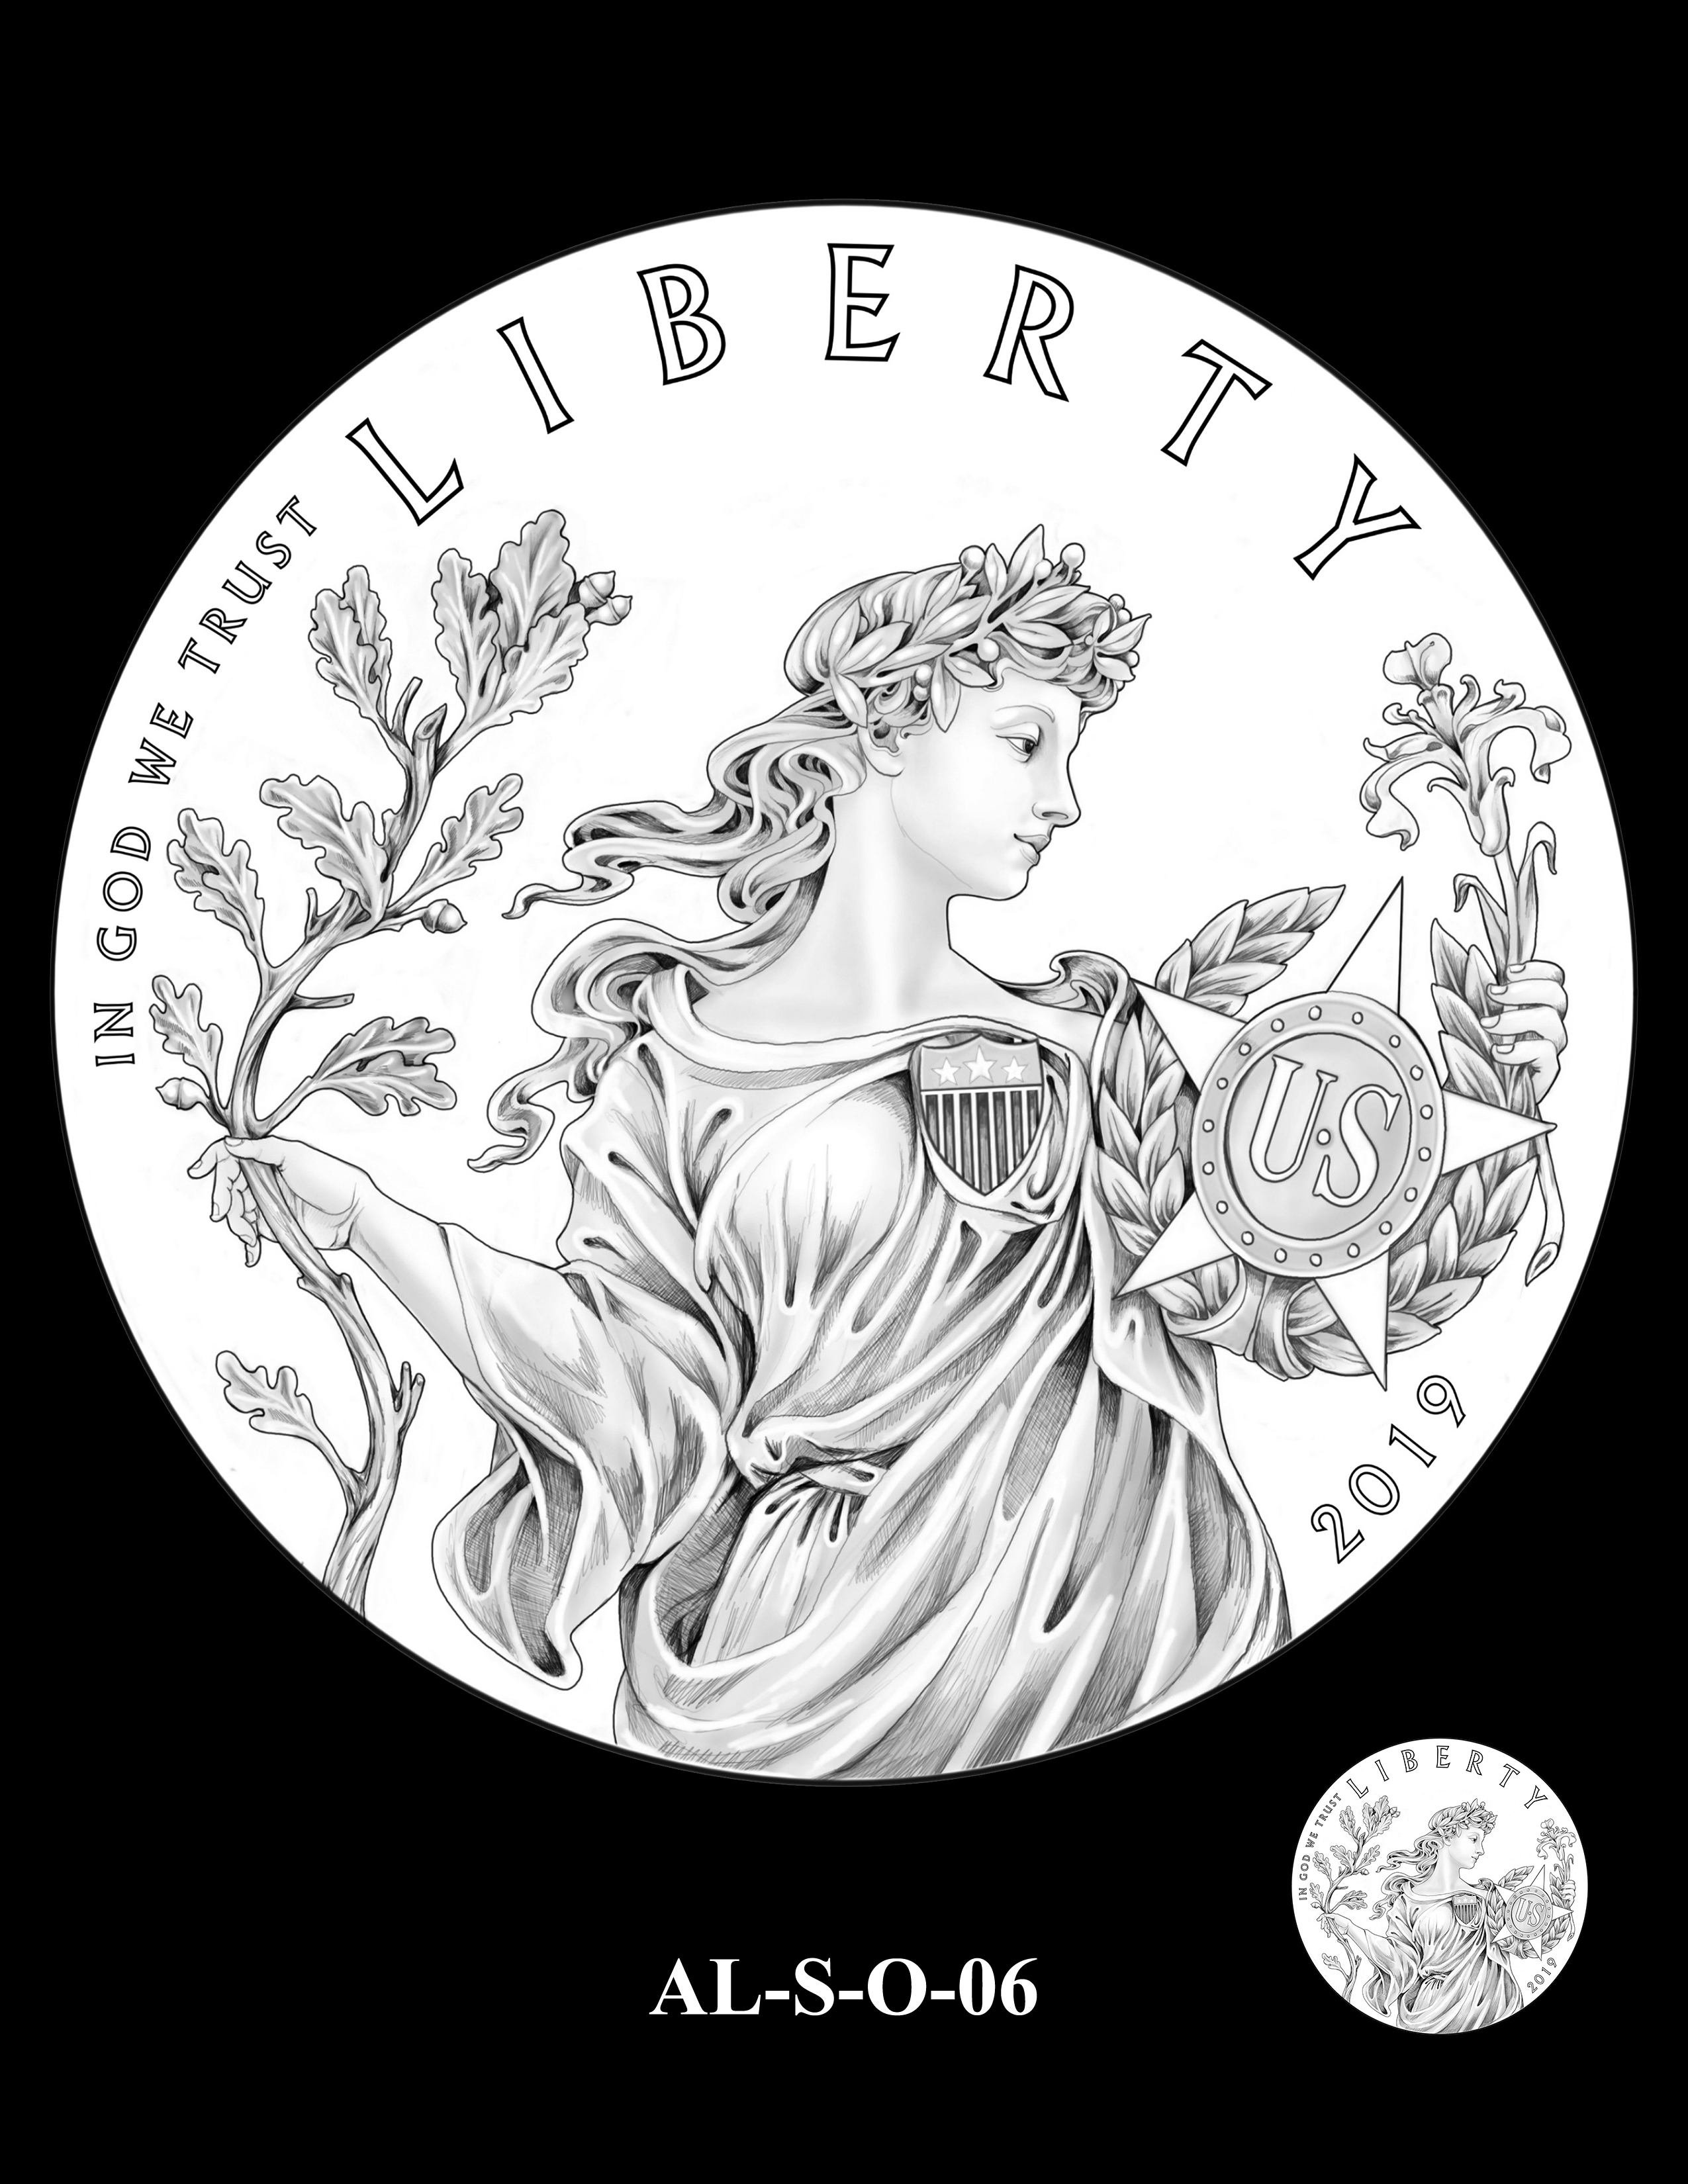 AL-S-O-06 -- 2019 American Legion 100th Anniversary Commemorative Coin Program - Silver Obverse